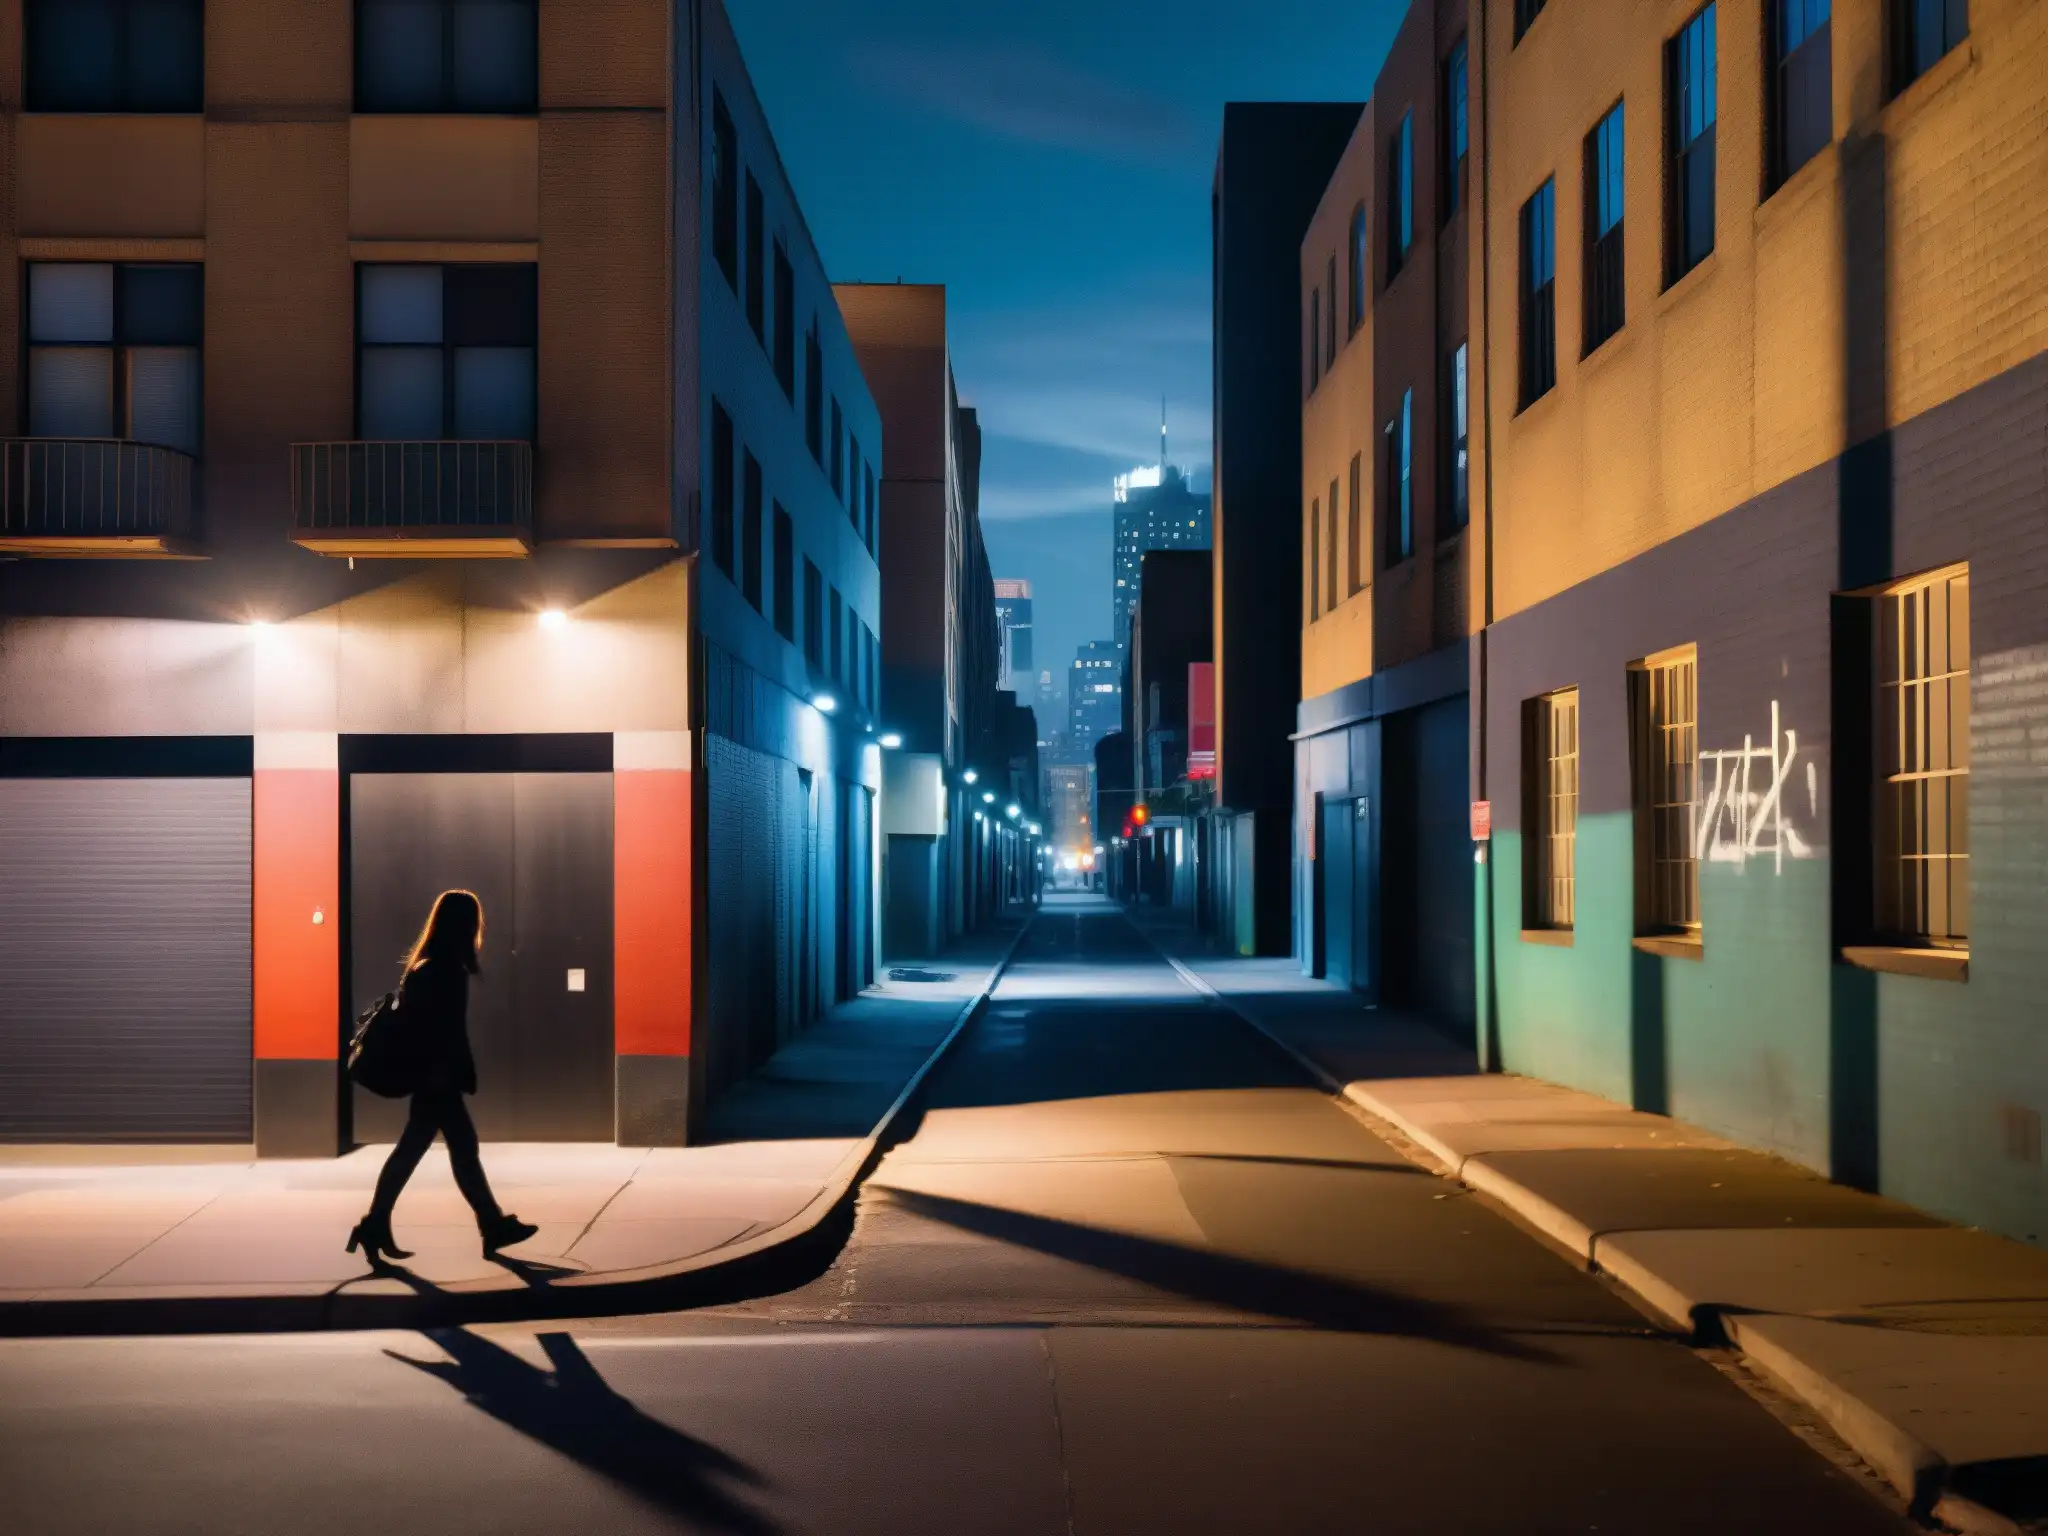 Un misterioso callejón nocturno en la ciudad, con sombras alargadas, luces tenues y una figura solitaria